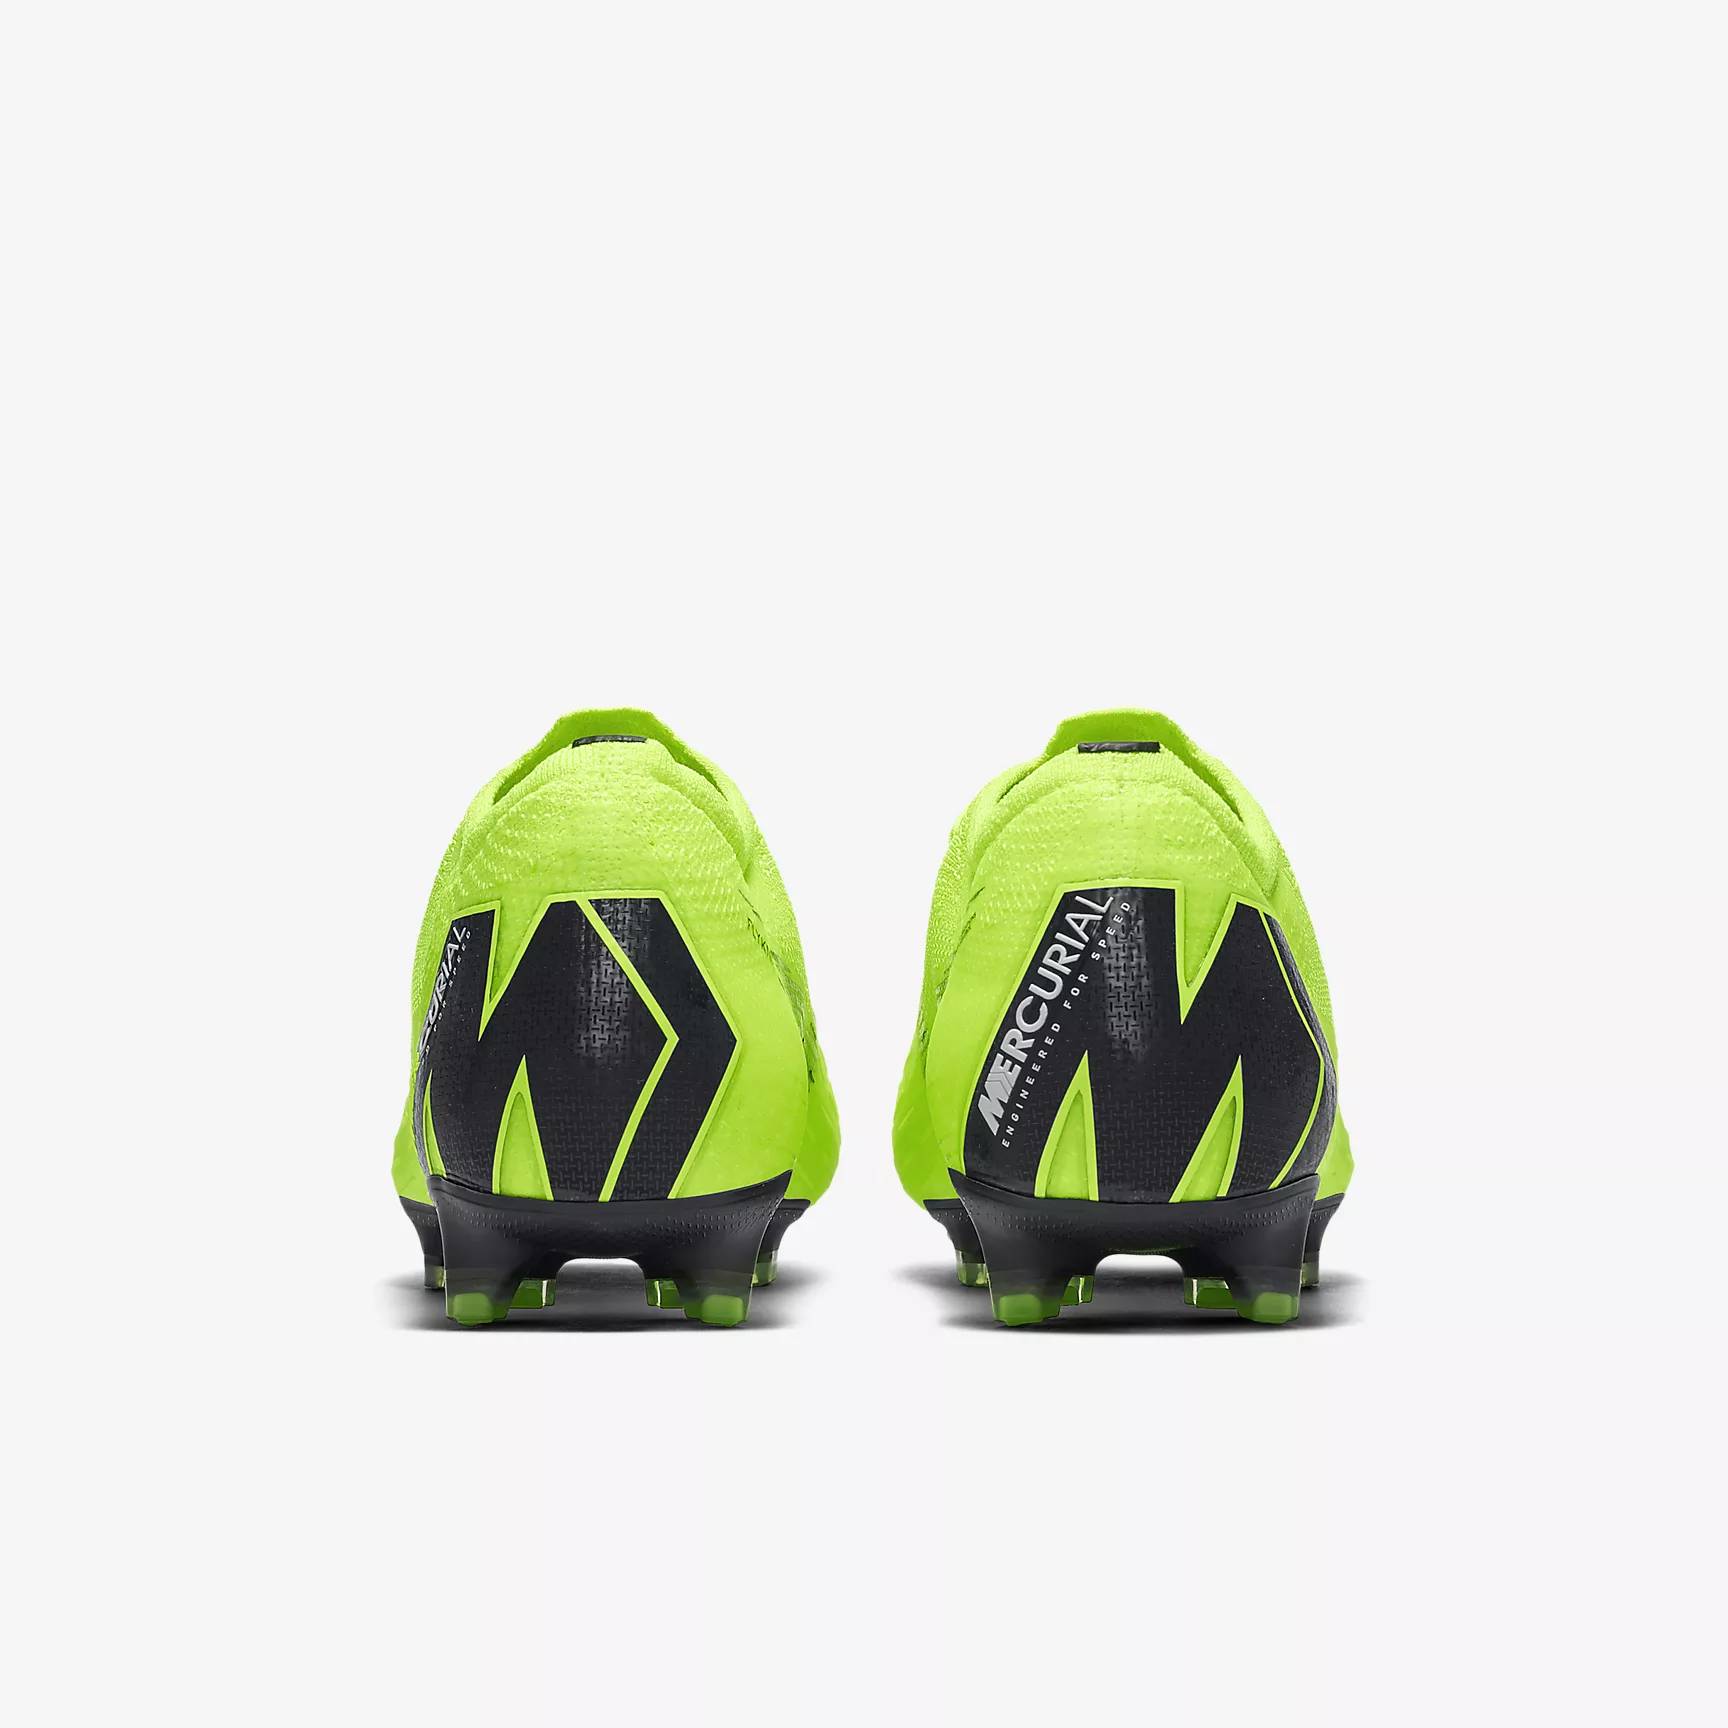 Motivar no usado unos pocos The New Nike Mercurial Vapor 360 Football Boot Has Arrived